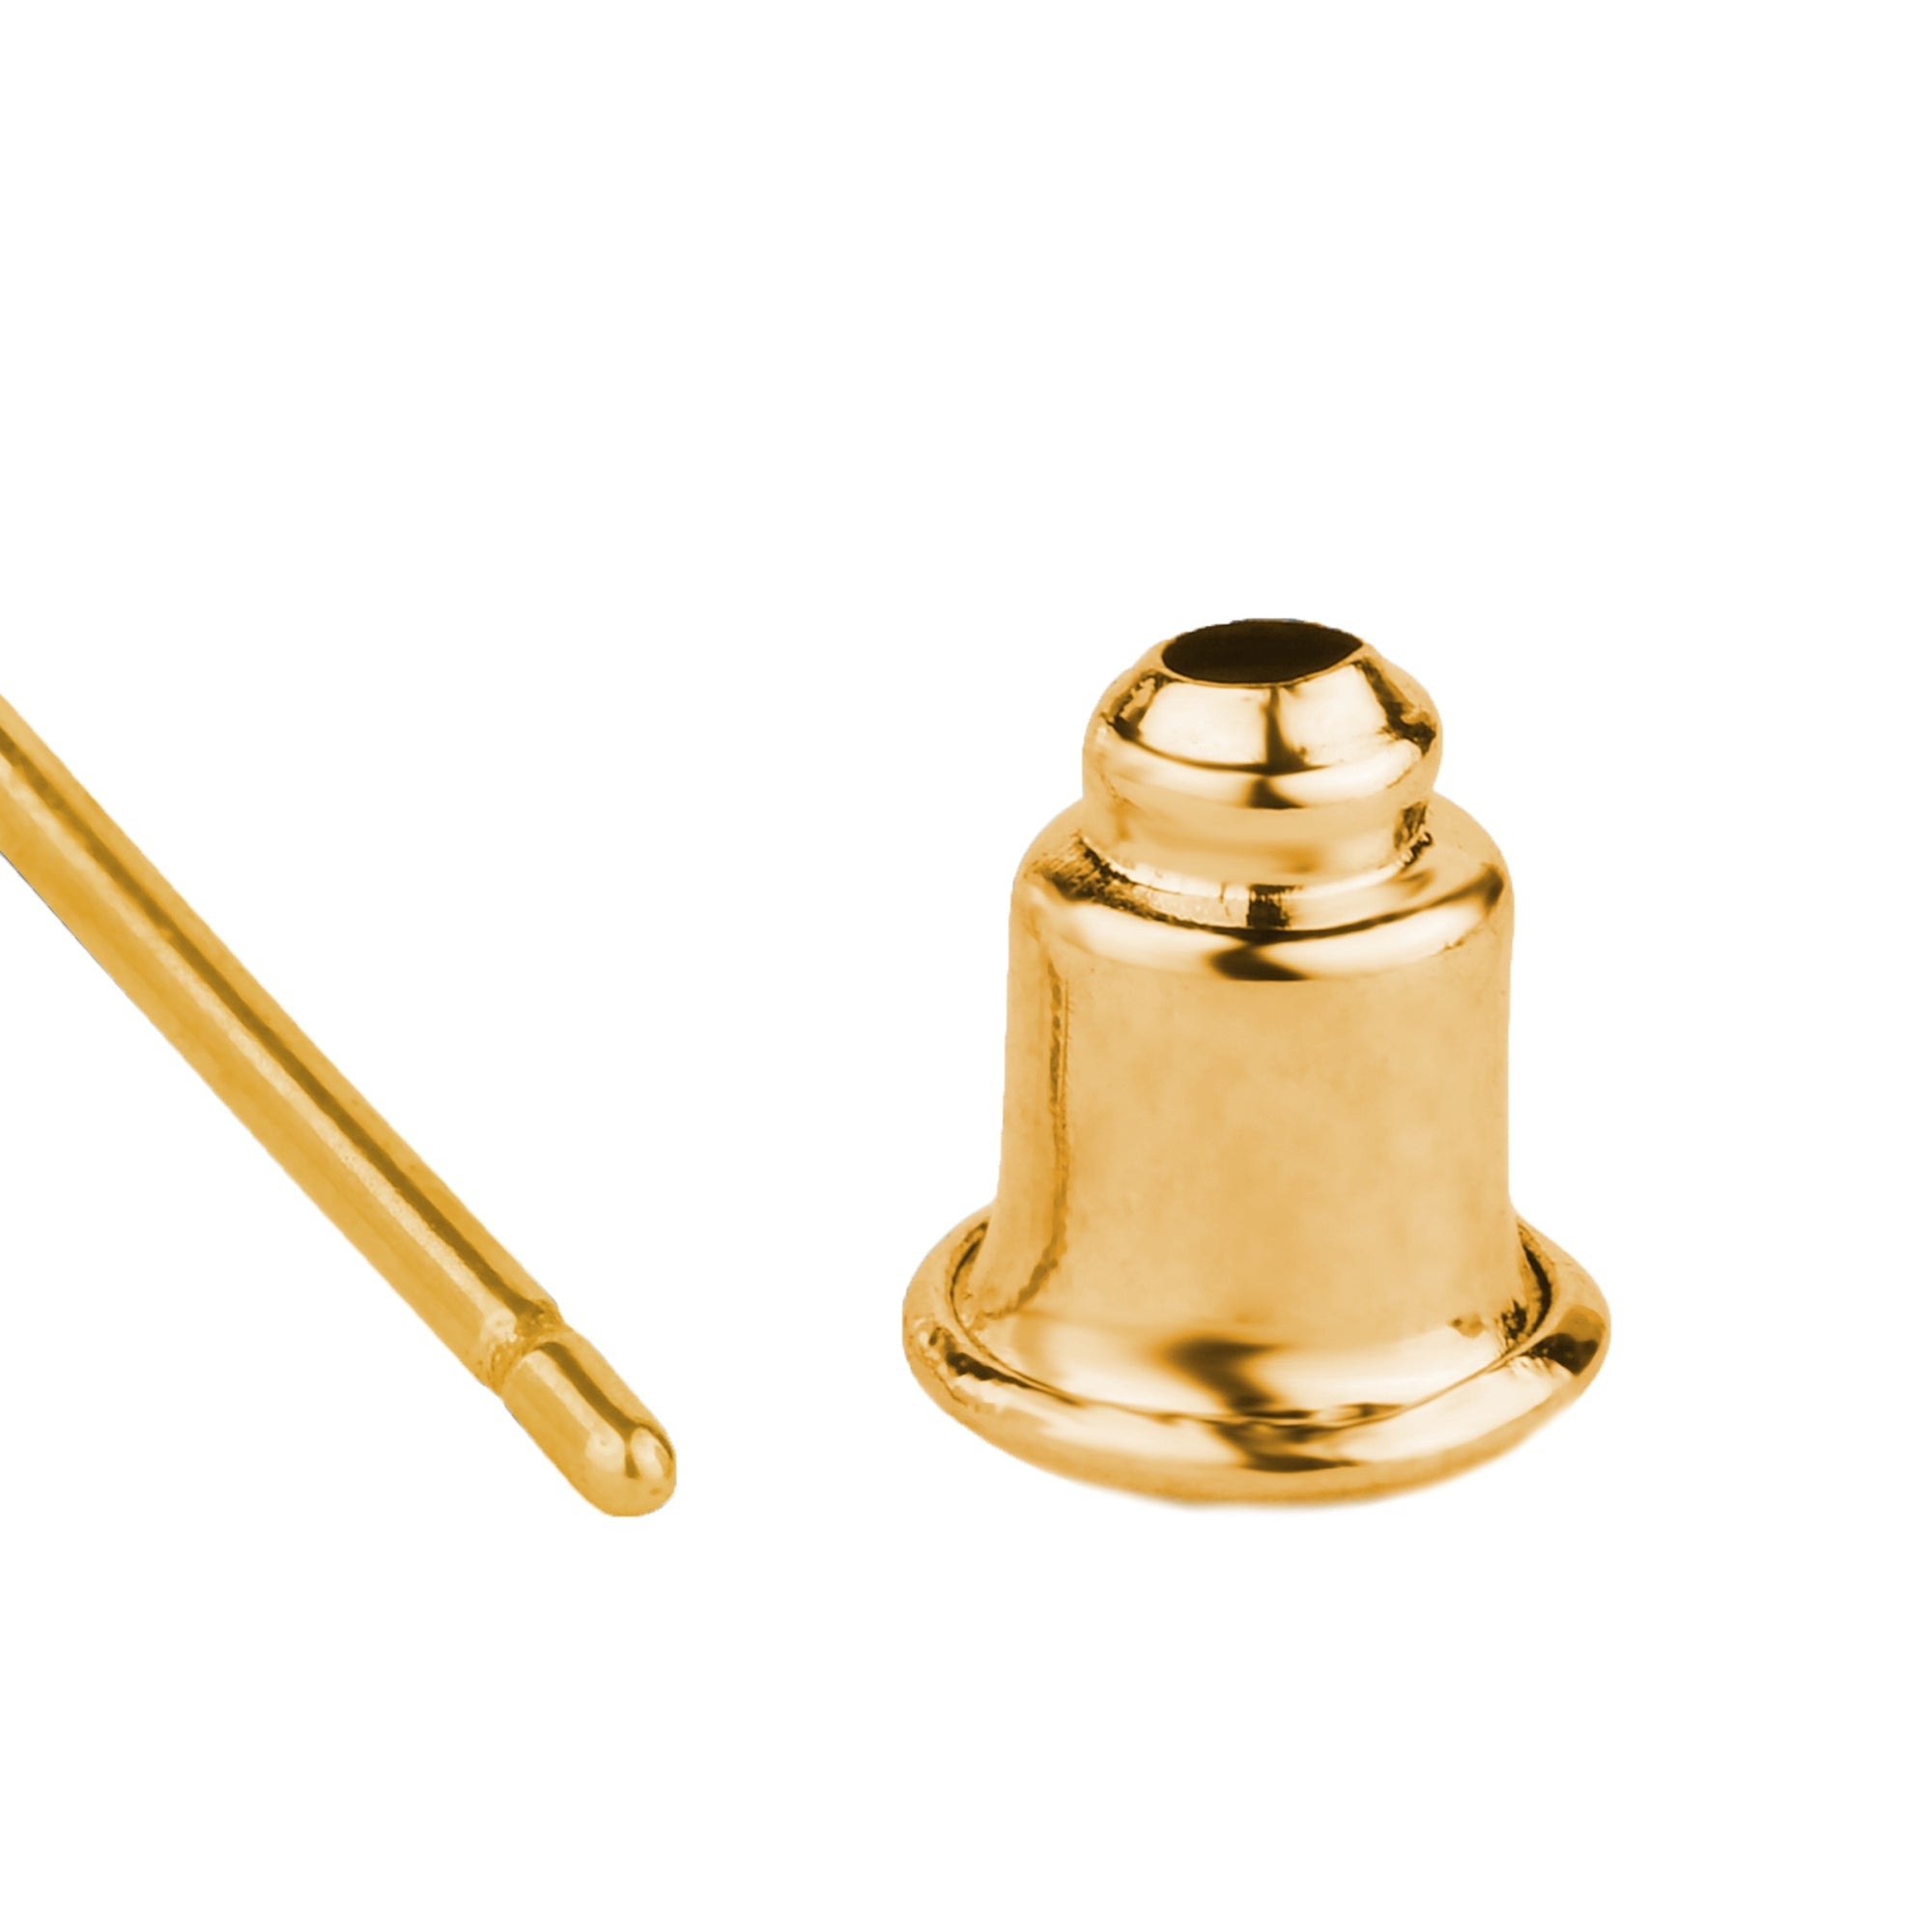 Gold-Plated Z Small Twist Hoop Earrings For Women